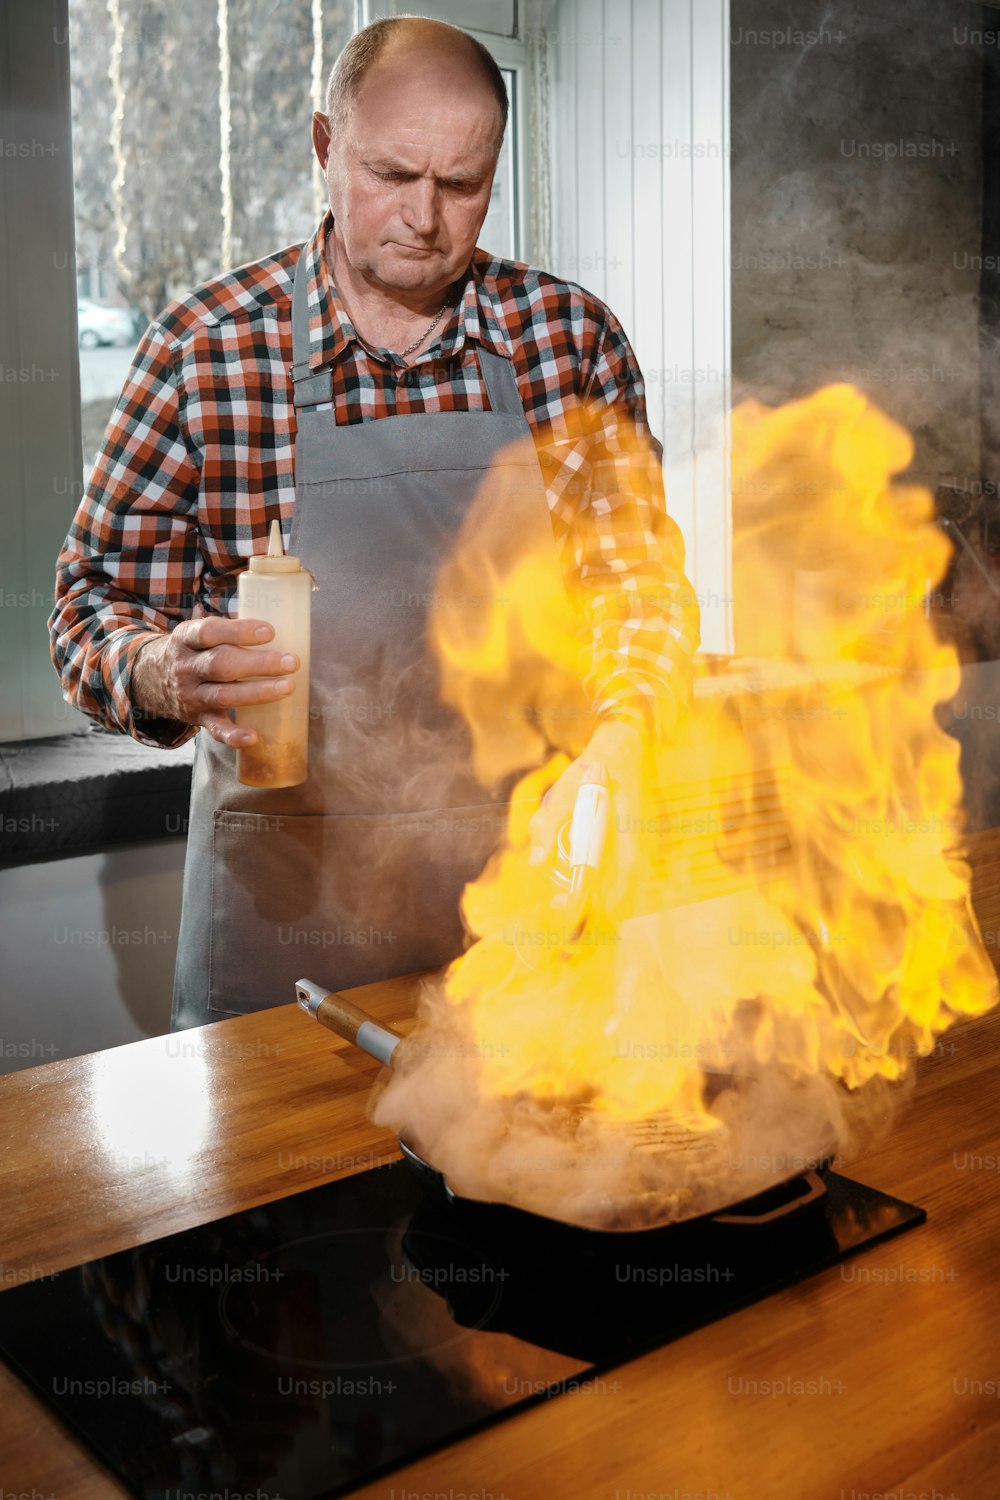 Un uomo in grembiule sta cucinando su una stufa